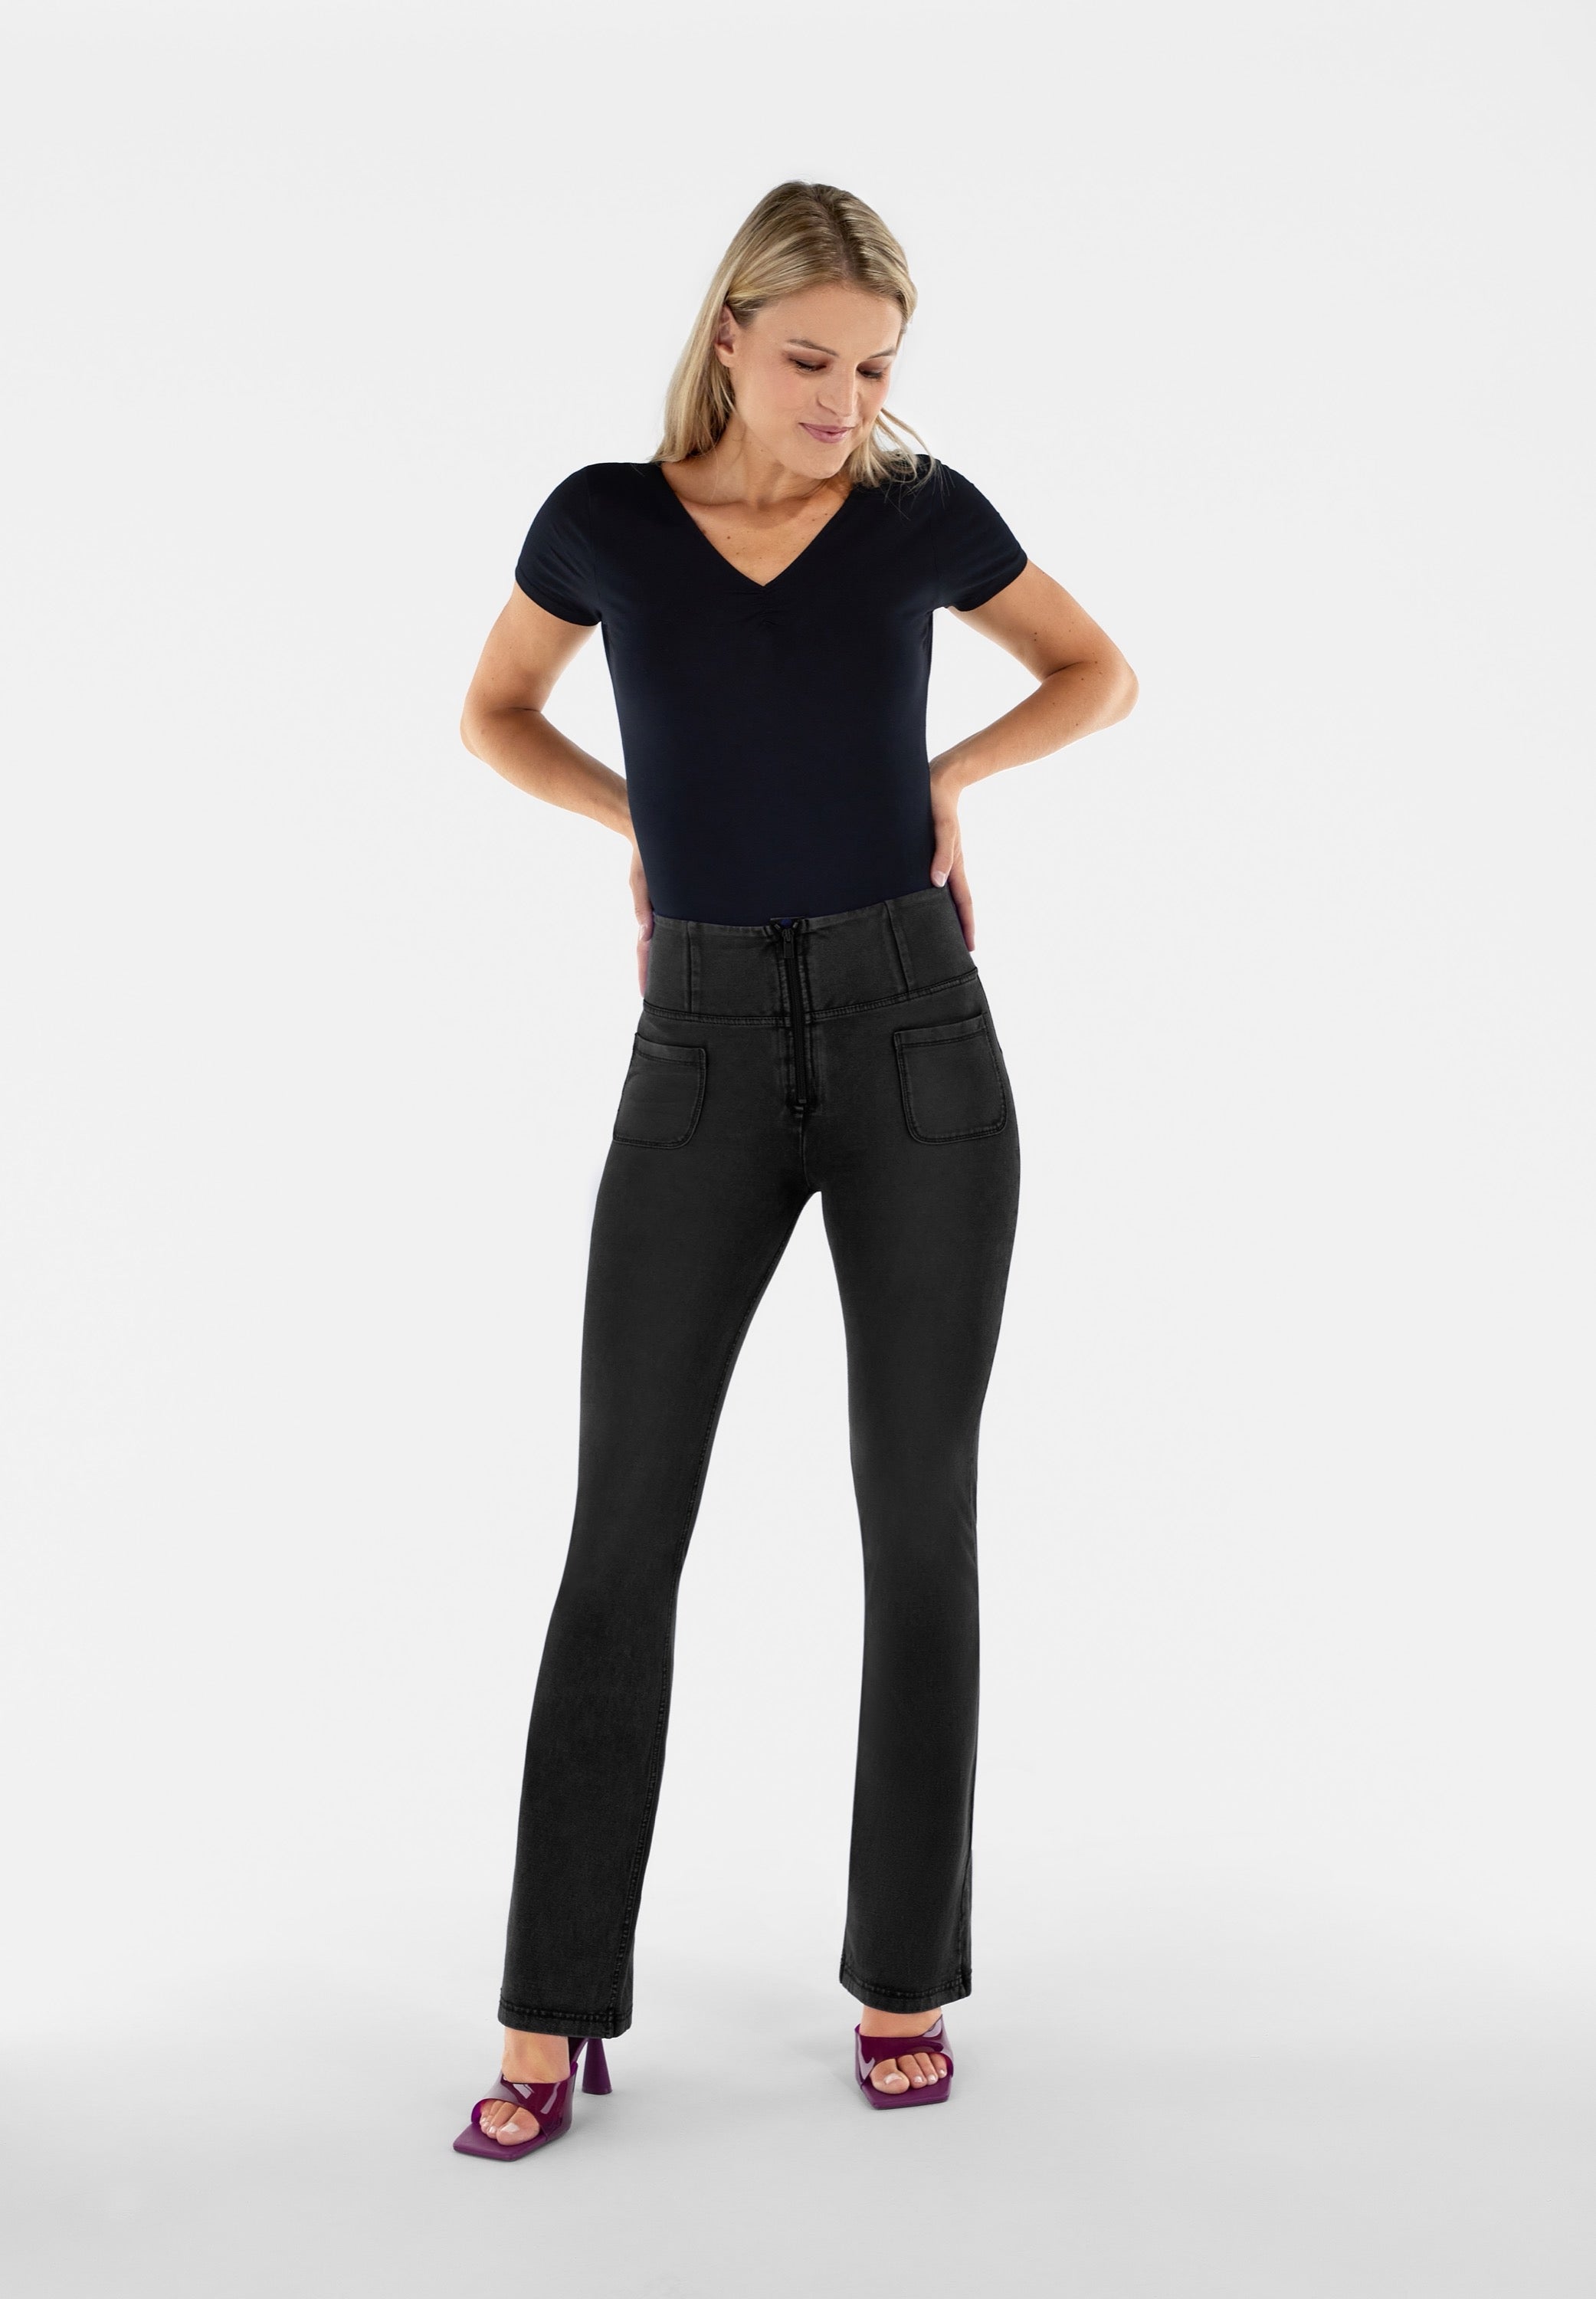 zwart black hoge taille high waist flared jeans wijde pijpen broek